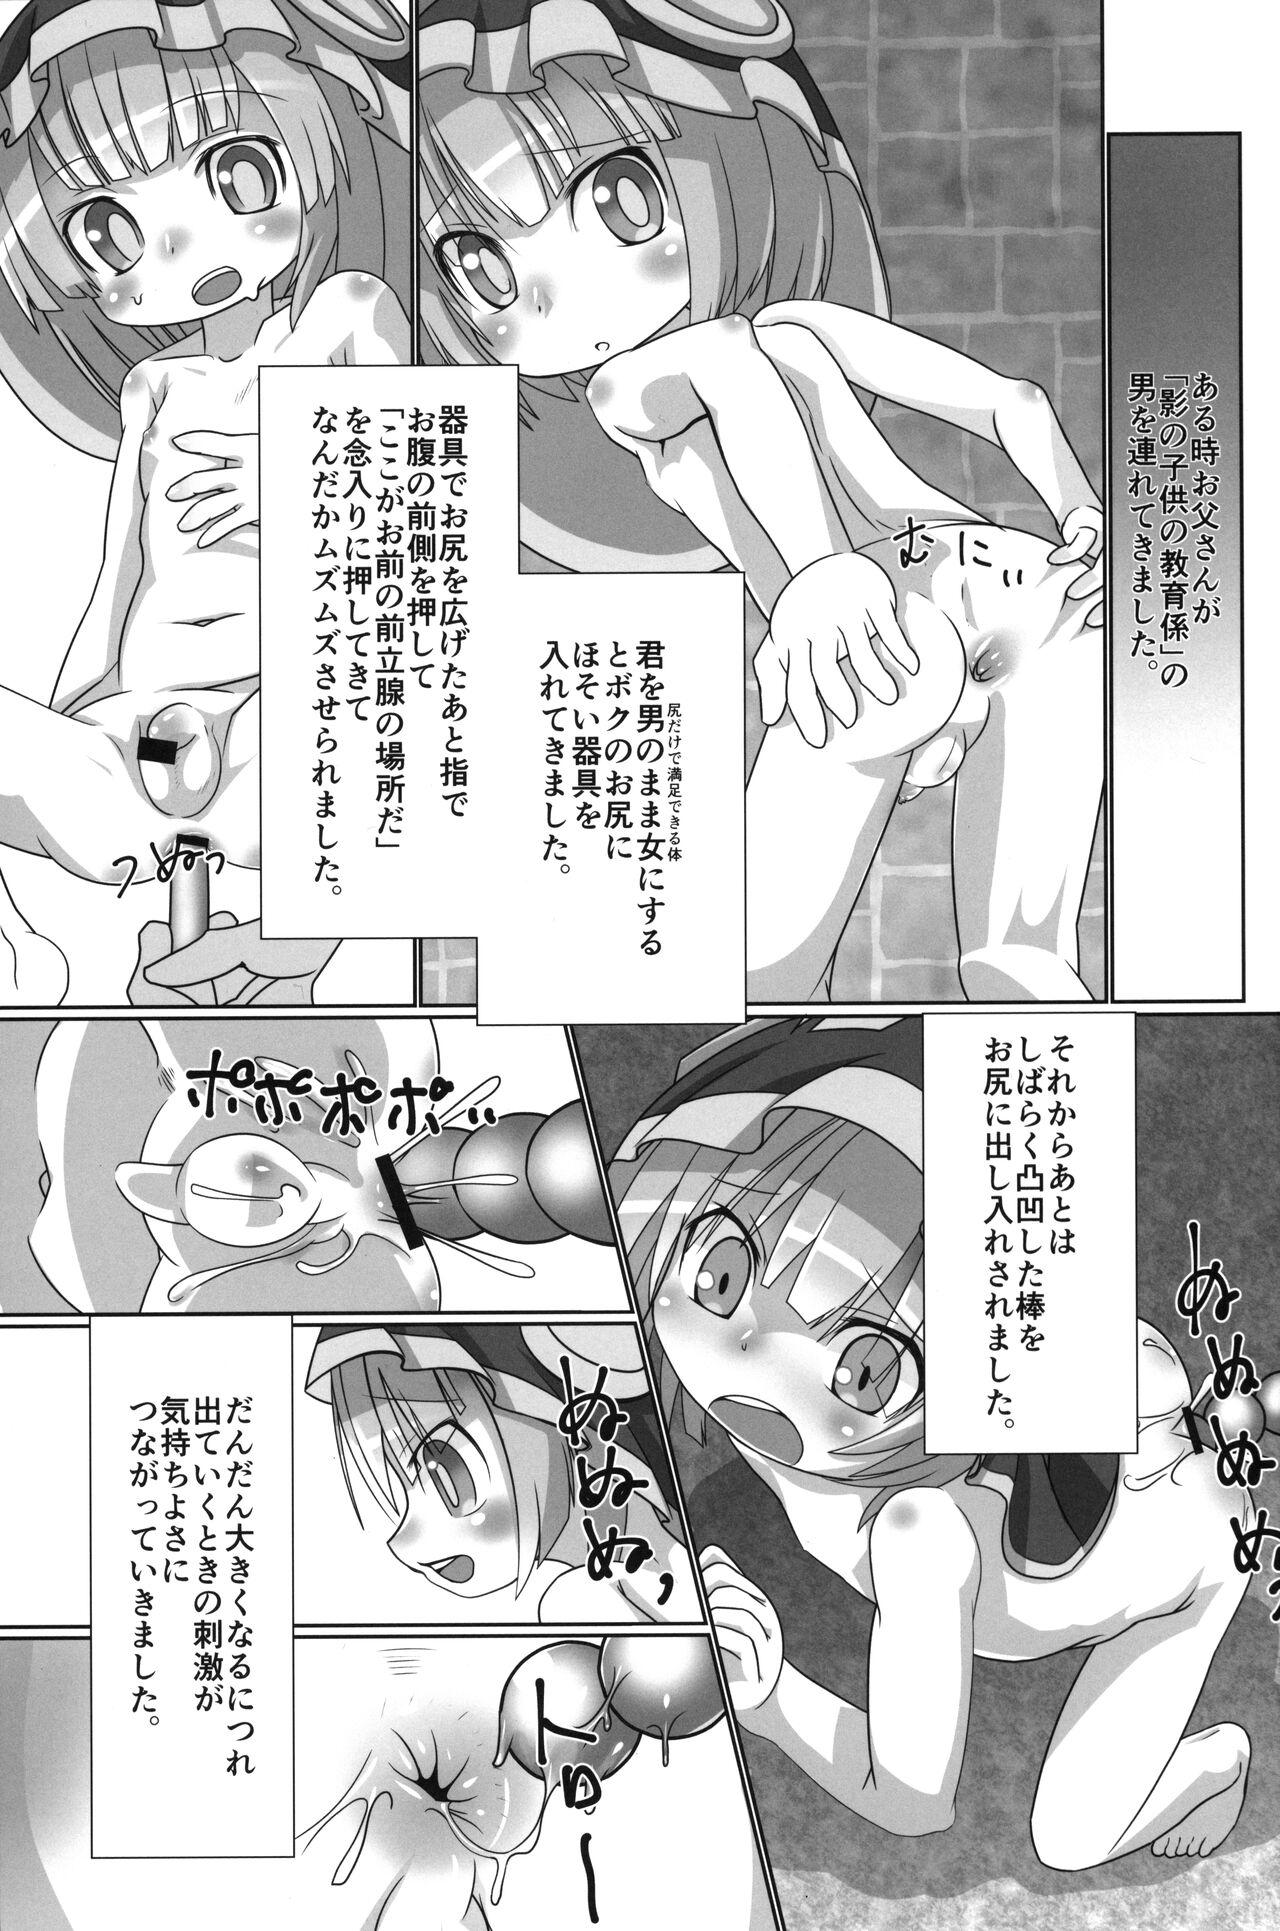 Cavala Chiisana Marulk-chan no Oshiri Kaihatsu no Nichijou - Made in abyss Nylons - Page 4